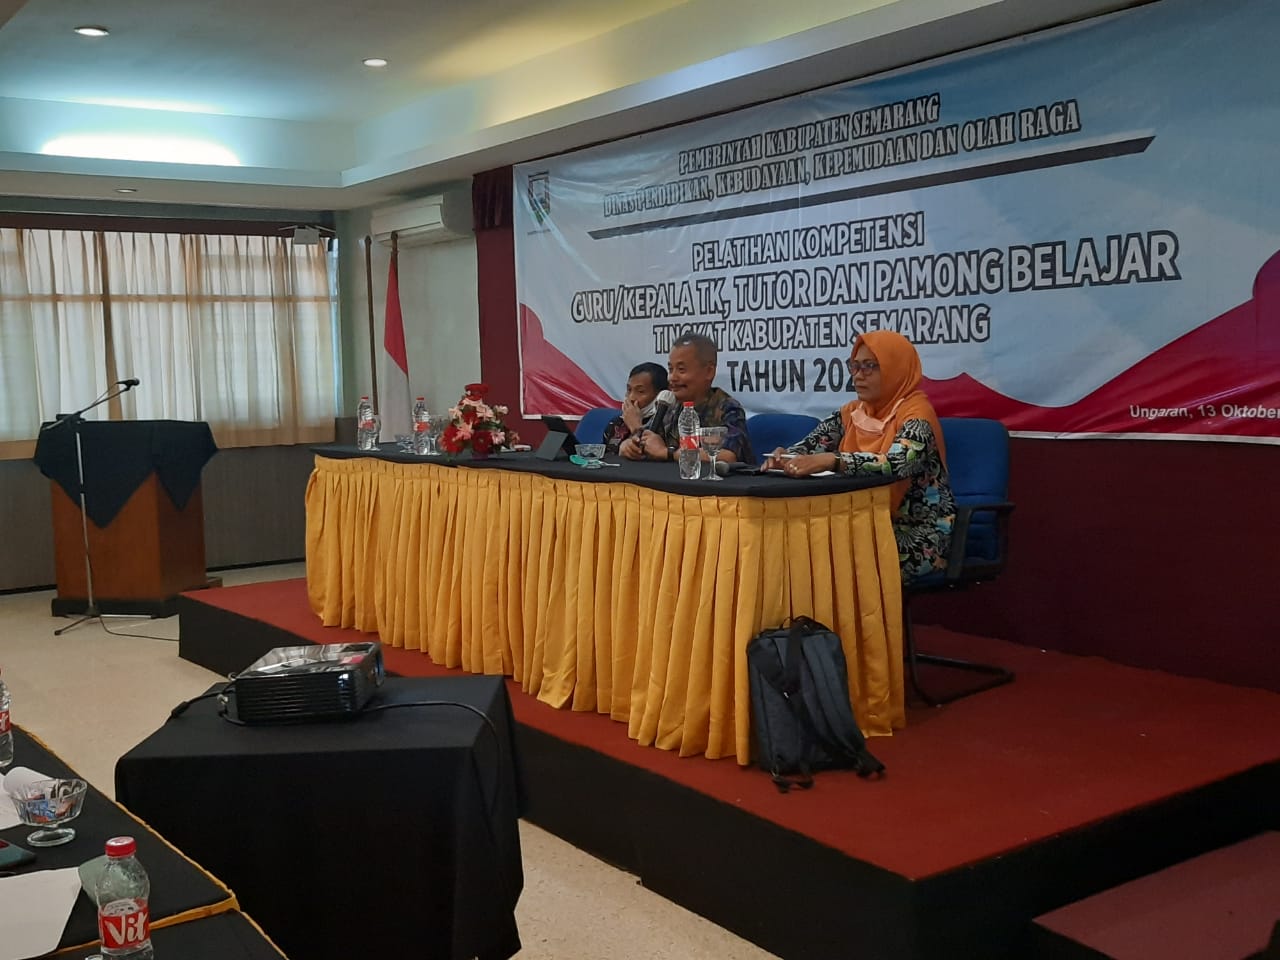 Pelatihan Kompetensi Guru/Kepala TK, Tutor dan Pamong Belajar Tingkat Kabupaten Semarang Tahun 2020